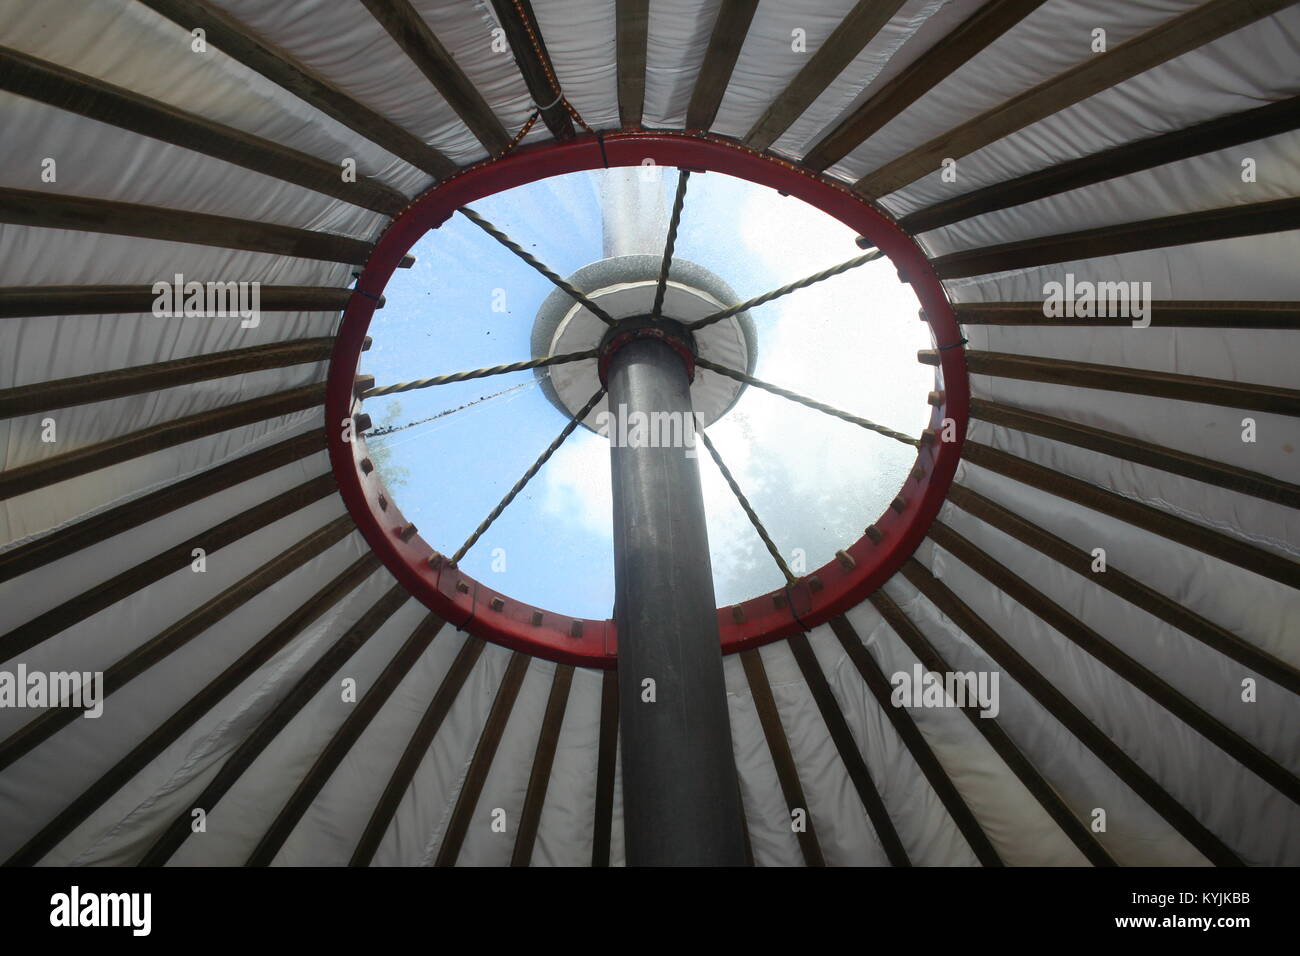 La vista a través del techo de una yurta glamping, REINO UNIDO Foto de stock